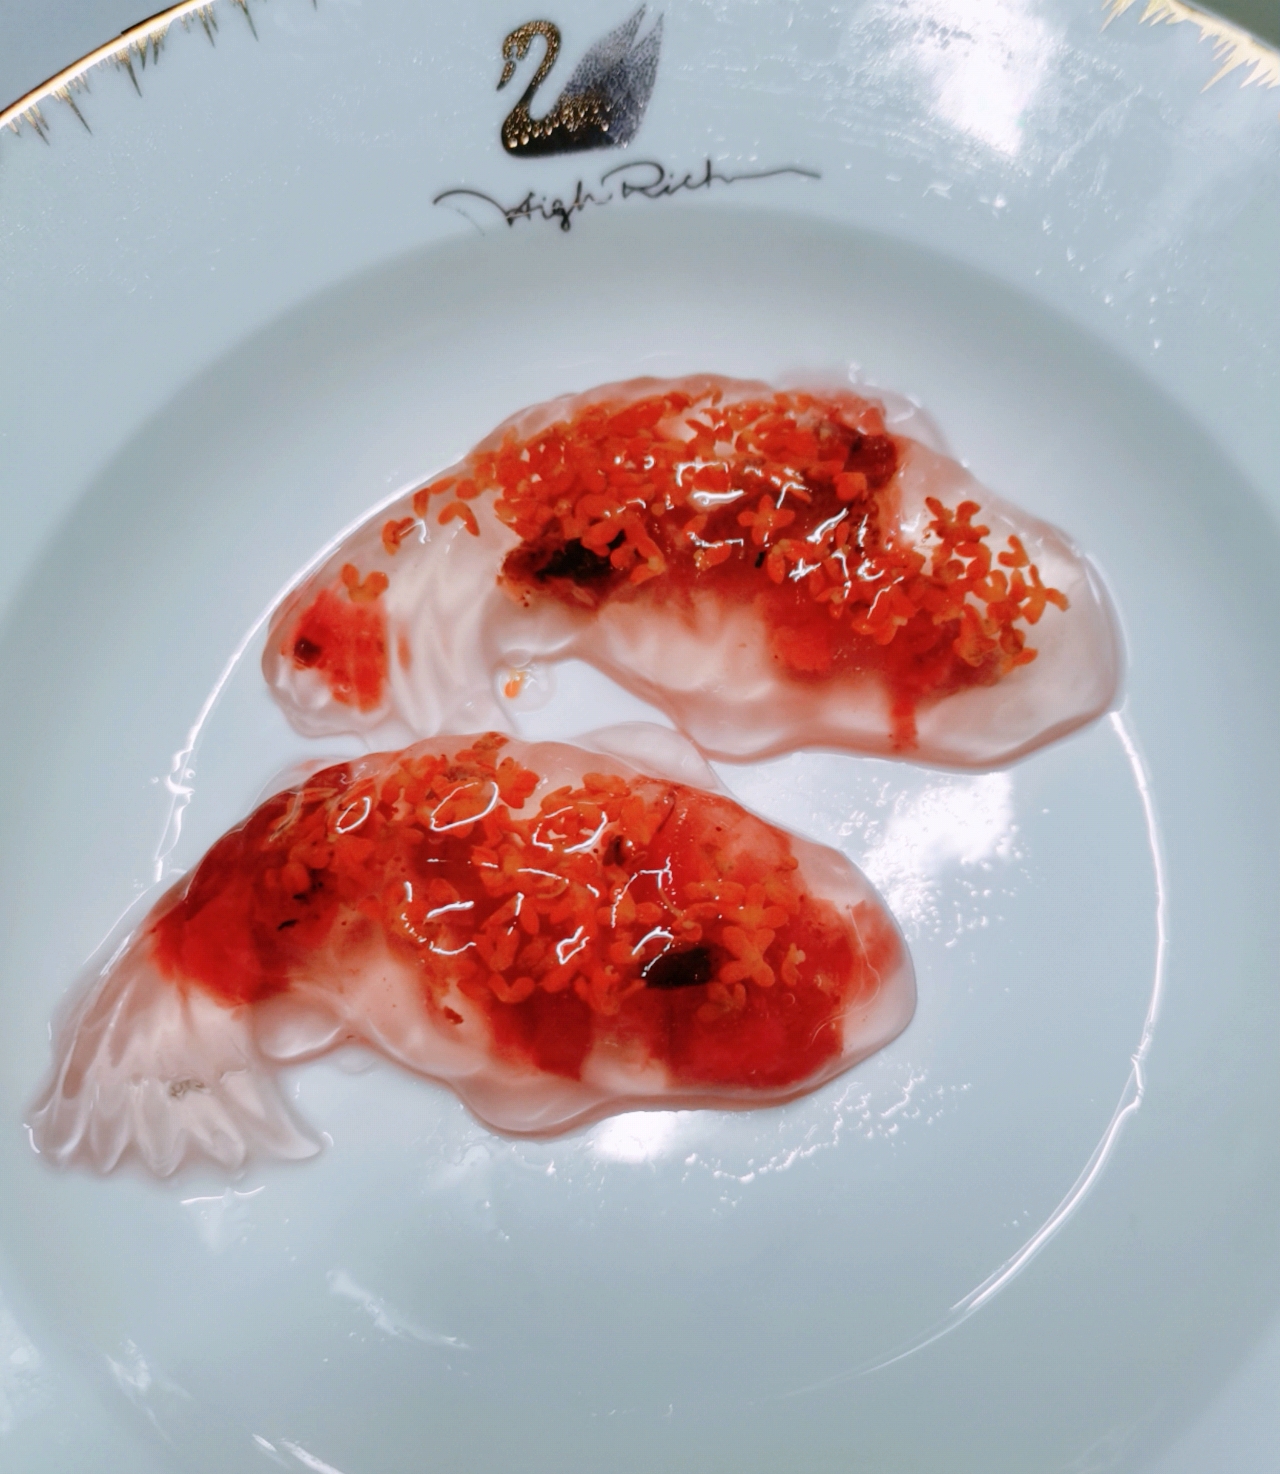 年夜饭桌上最惊艳的压轴甜点：桂花枸杞琉璃鱼